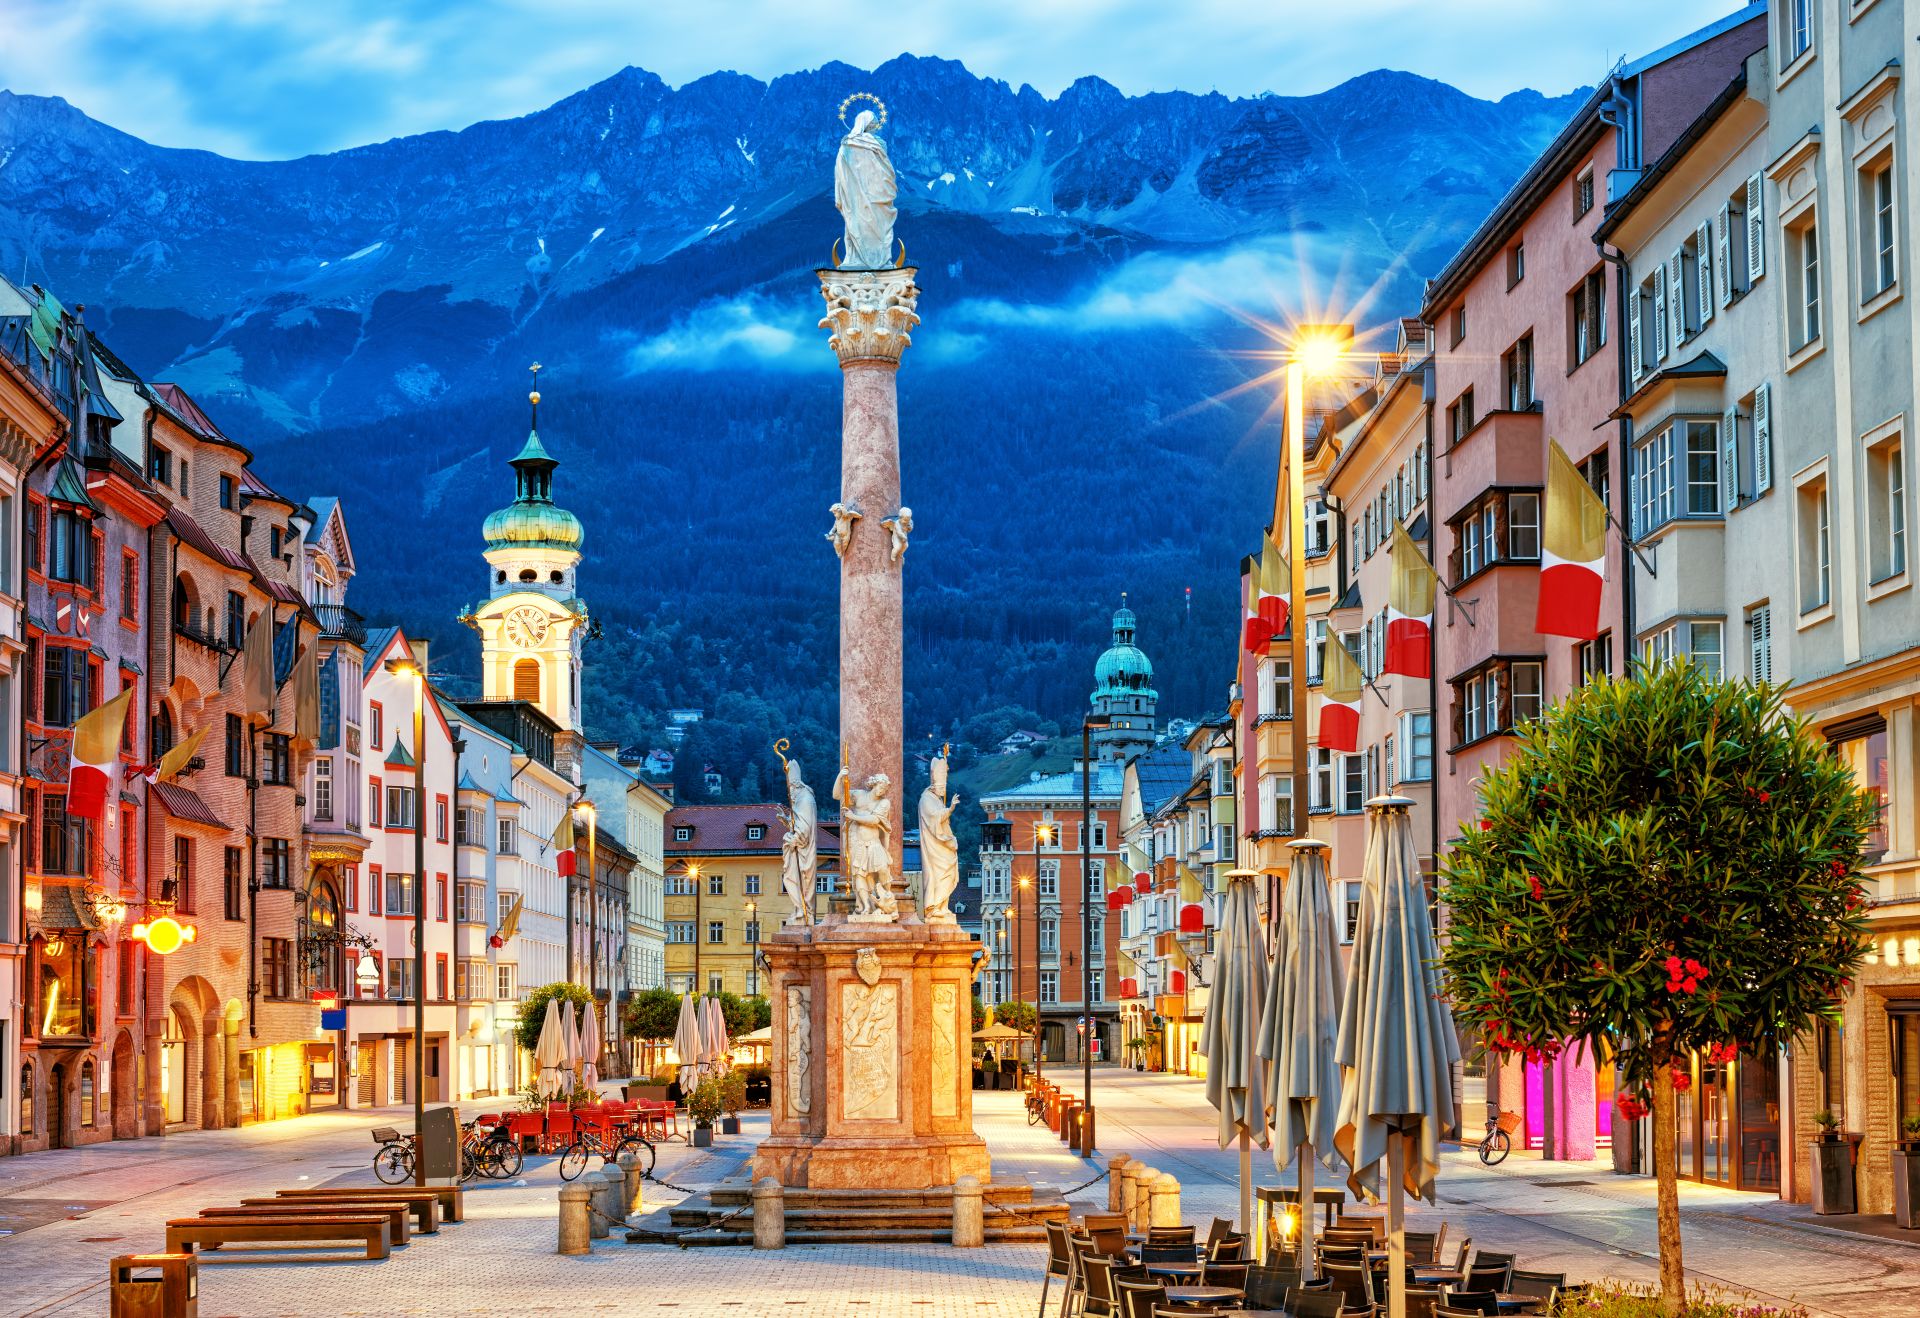 Il centro storico di Innsbruck tra le montagne delle Alpi